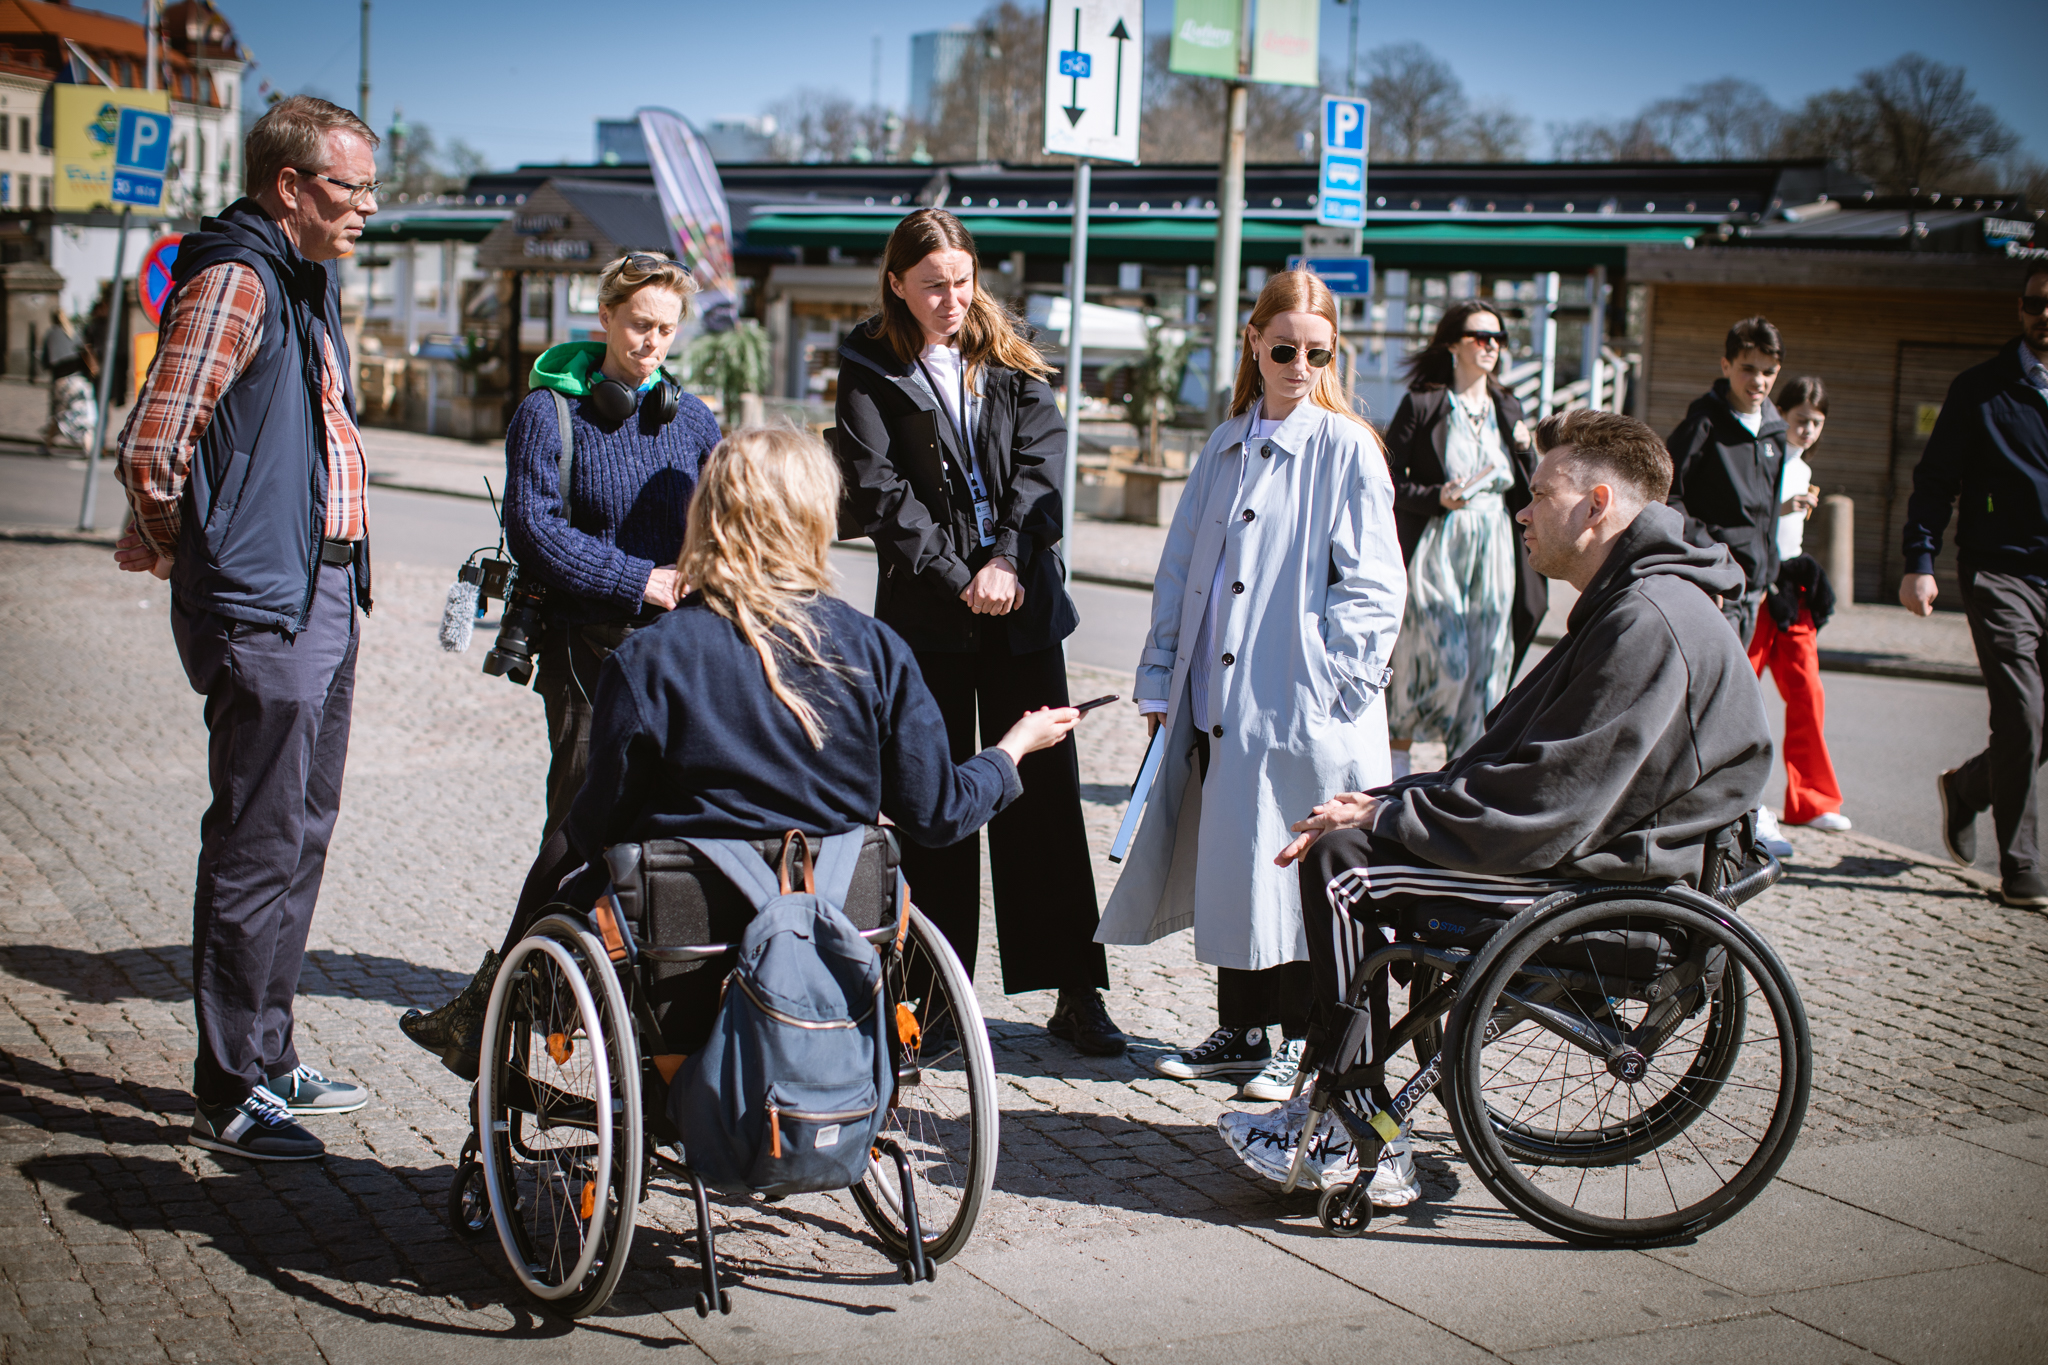 Representanter från Stadsmiljöförvaltningen, Göteborsg-Posten och GIL samtalar under ett reportage om uteserveringar i Göteborg. Stadsmiljö.